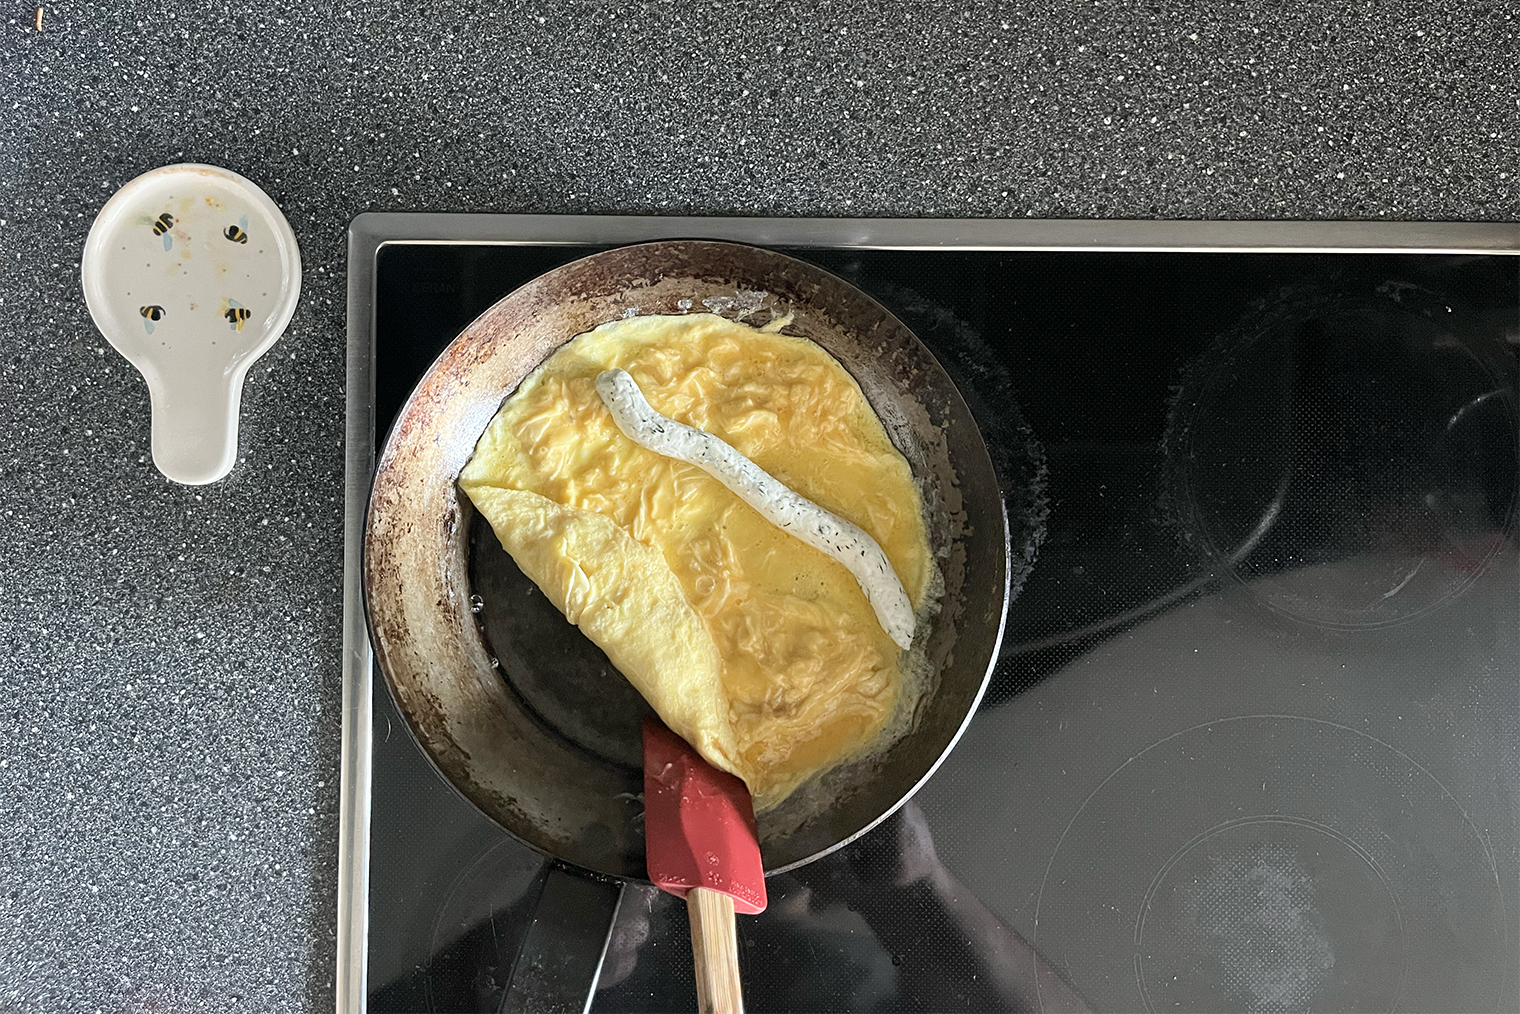 Я не очень удачно разместил сырную начинку: лучше выдавливать ее ближе к ручке сковороды. Так она будет в самом центре омлета